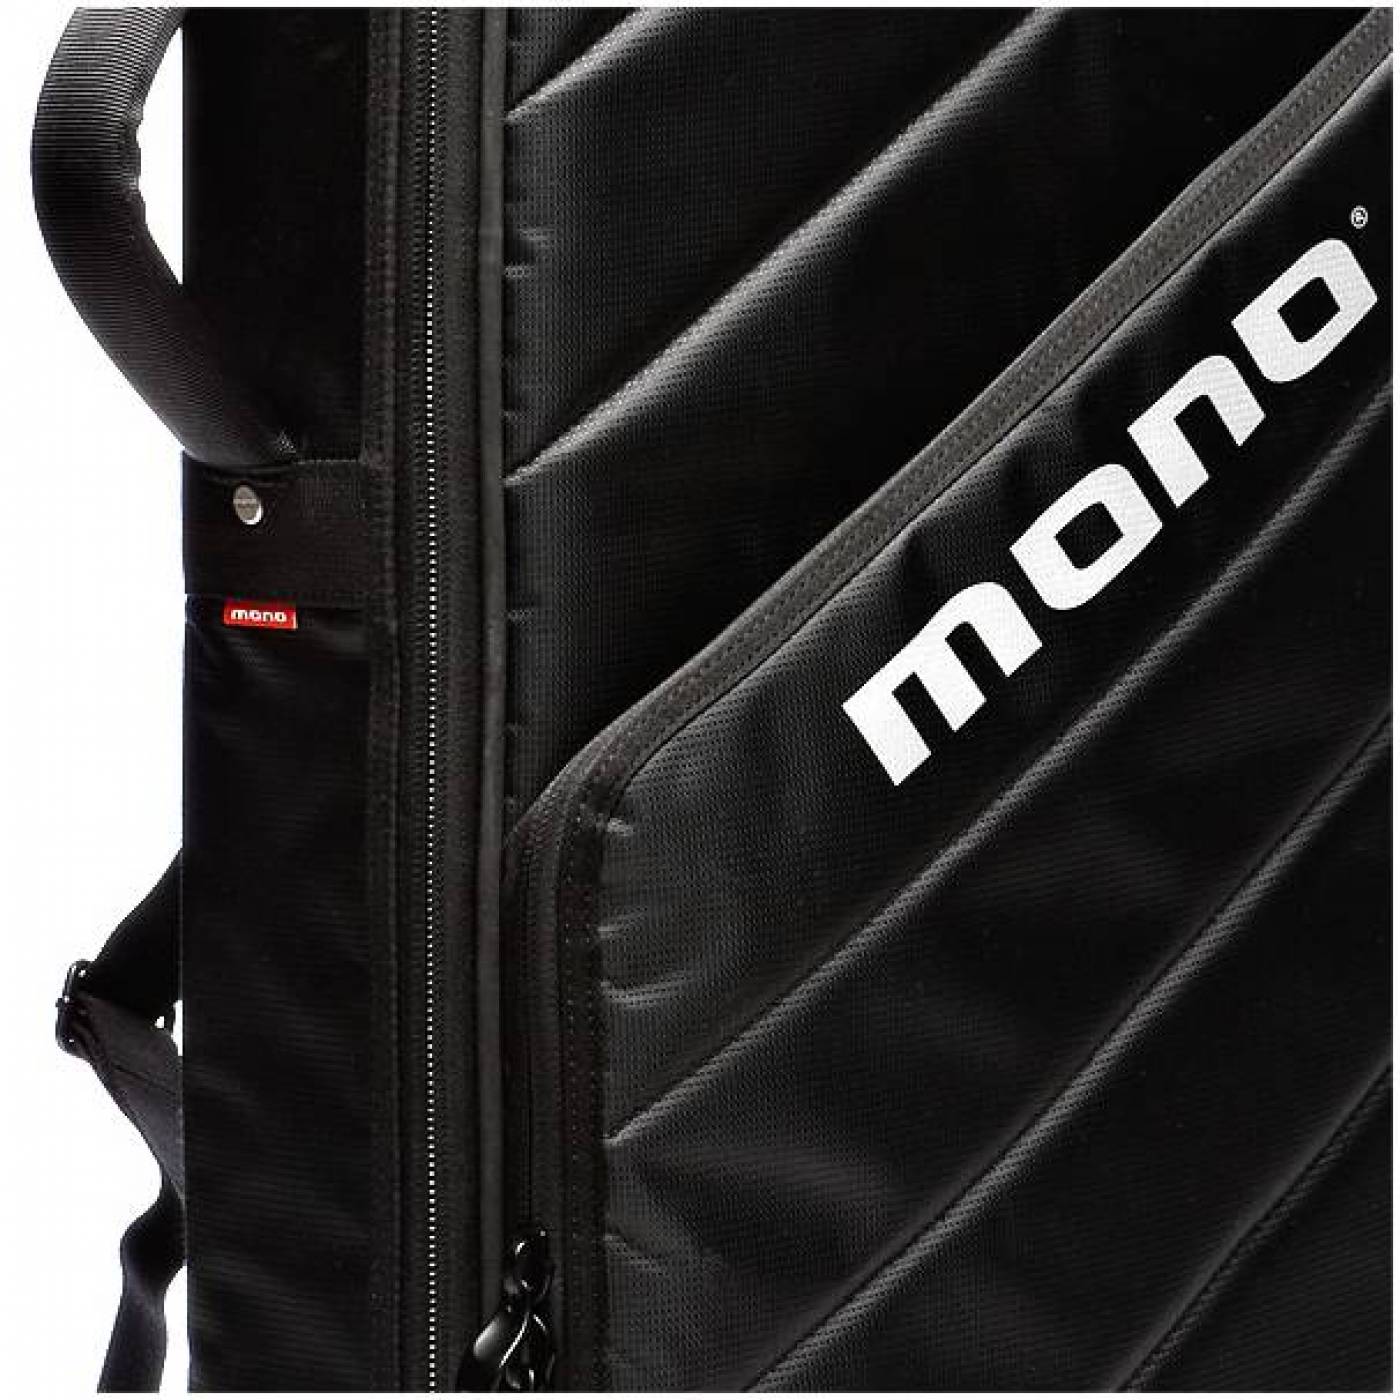 Mono m80-k61-BLK. Mono m80 vs Vertigo. Чехол mono. Mono m80-2g-BLK фото.